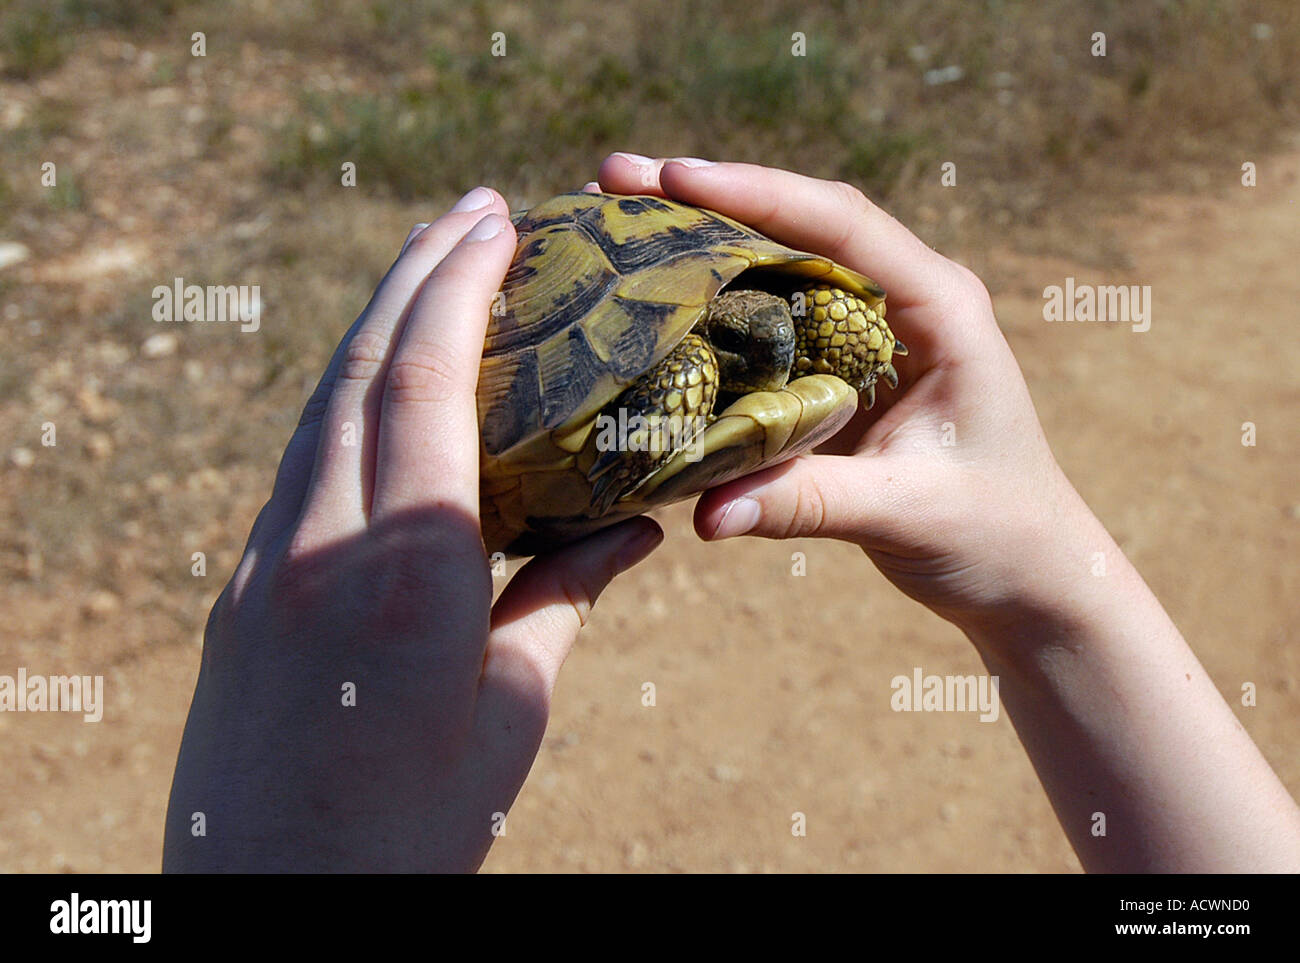 Kind hält eine Schildkröte in den Händen child holding a tortoise in his hands Stock Photo